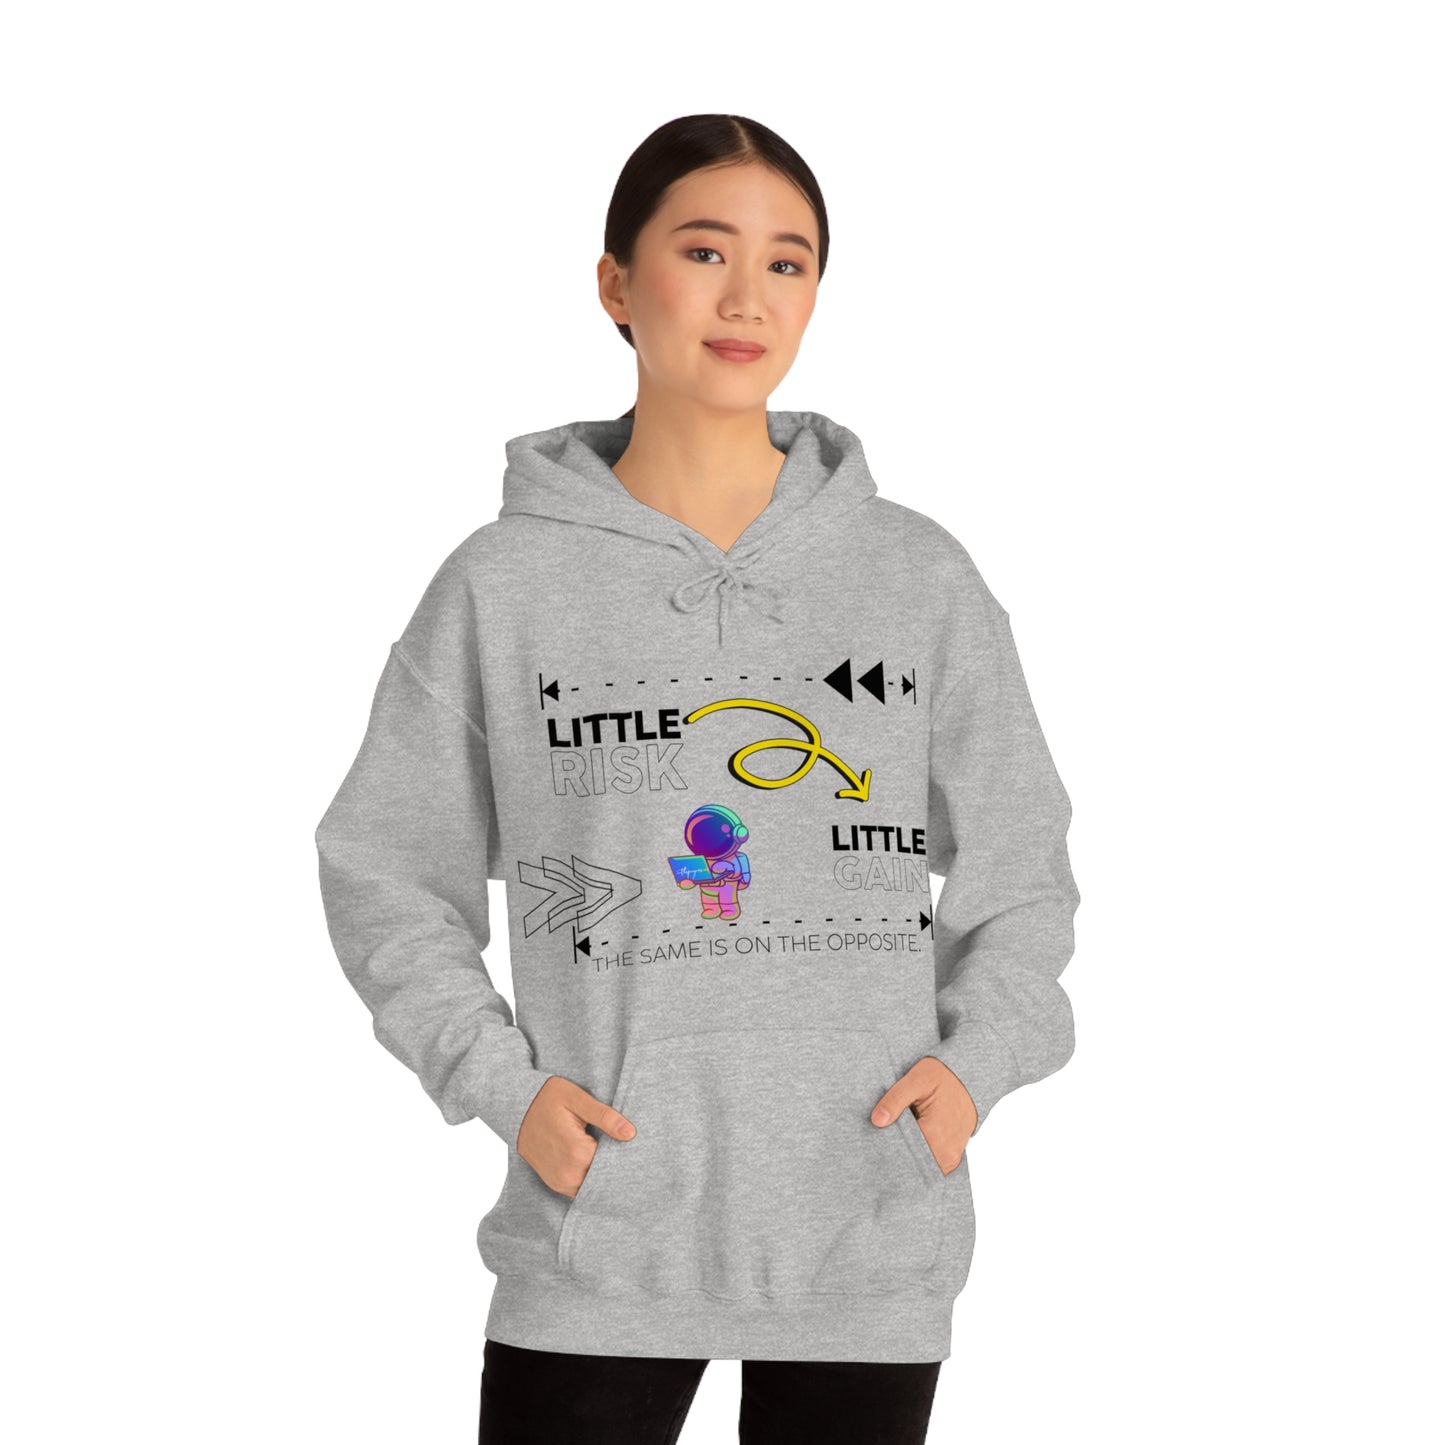 Little Risk, Little Gain | Heavy Blend Hooded Sweatshirt